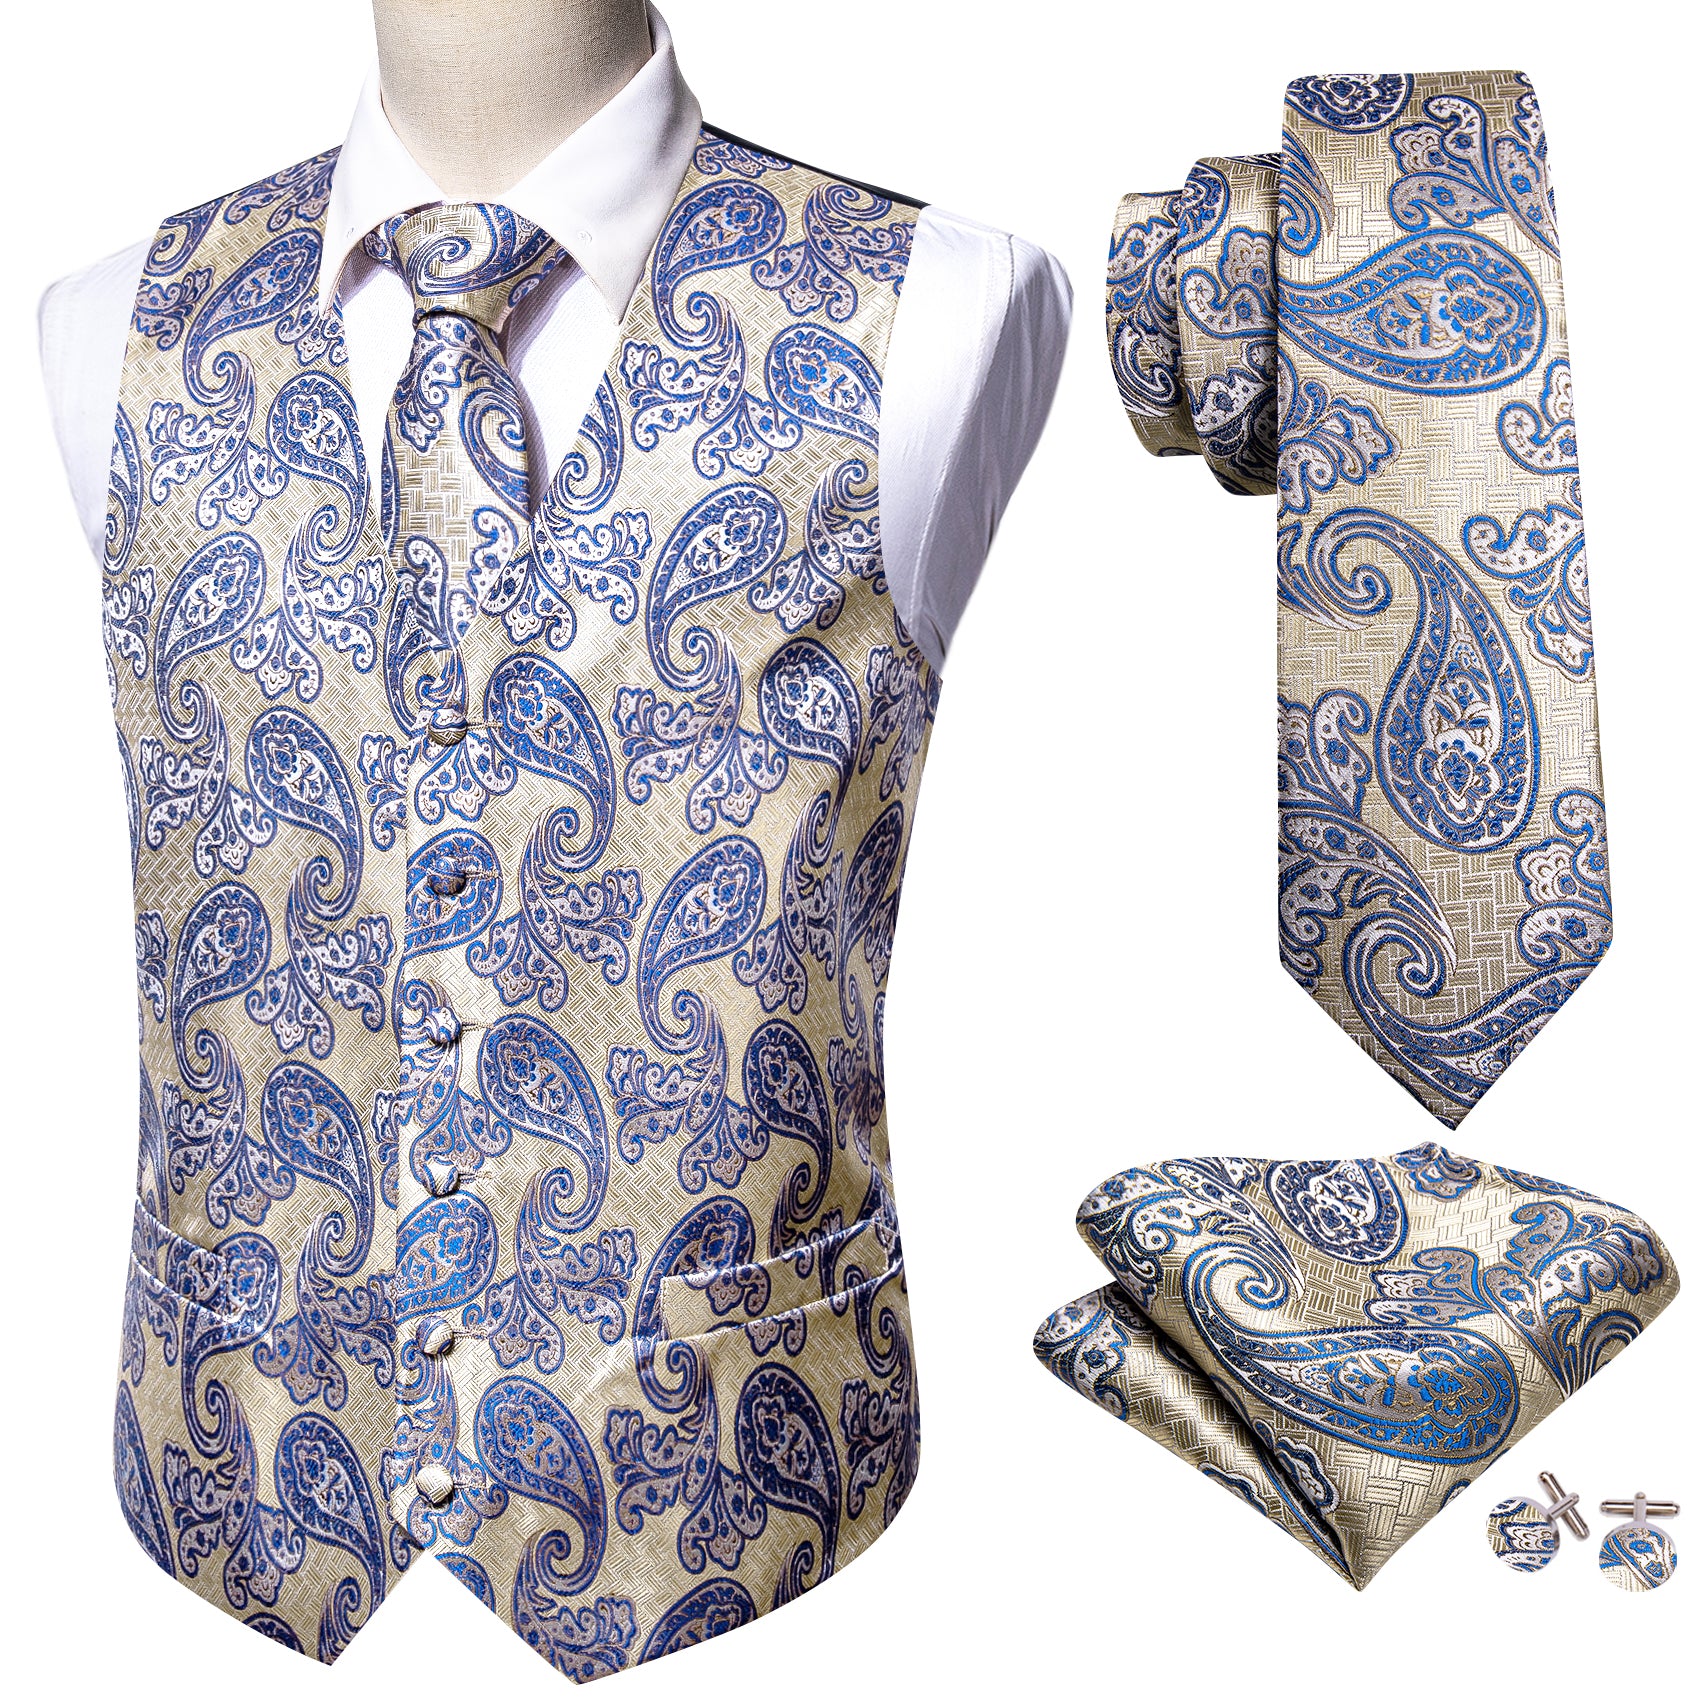 Barry.wang Men's Vest Silver Blue Paisley Silk Vest Necktie Pocket Square Cufflinks Set Classic